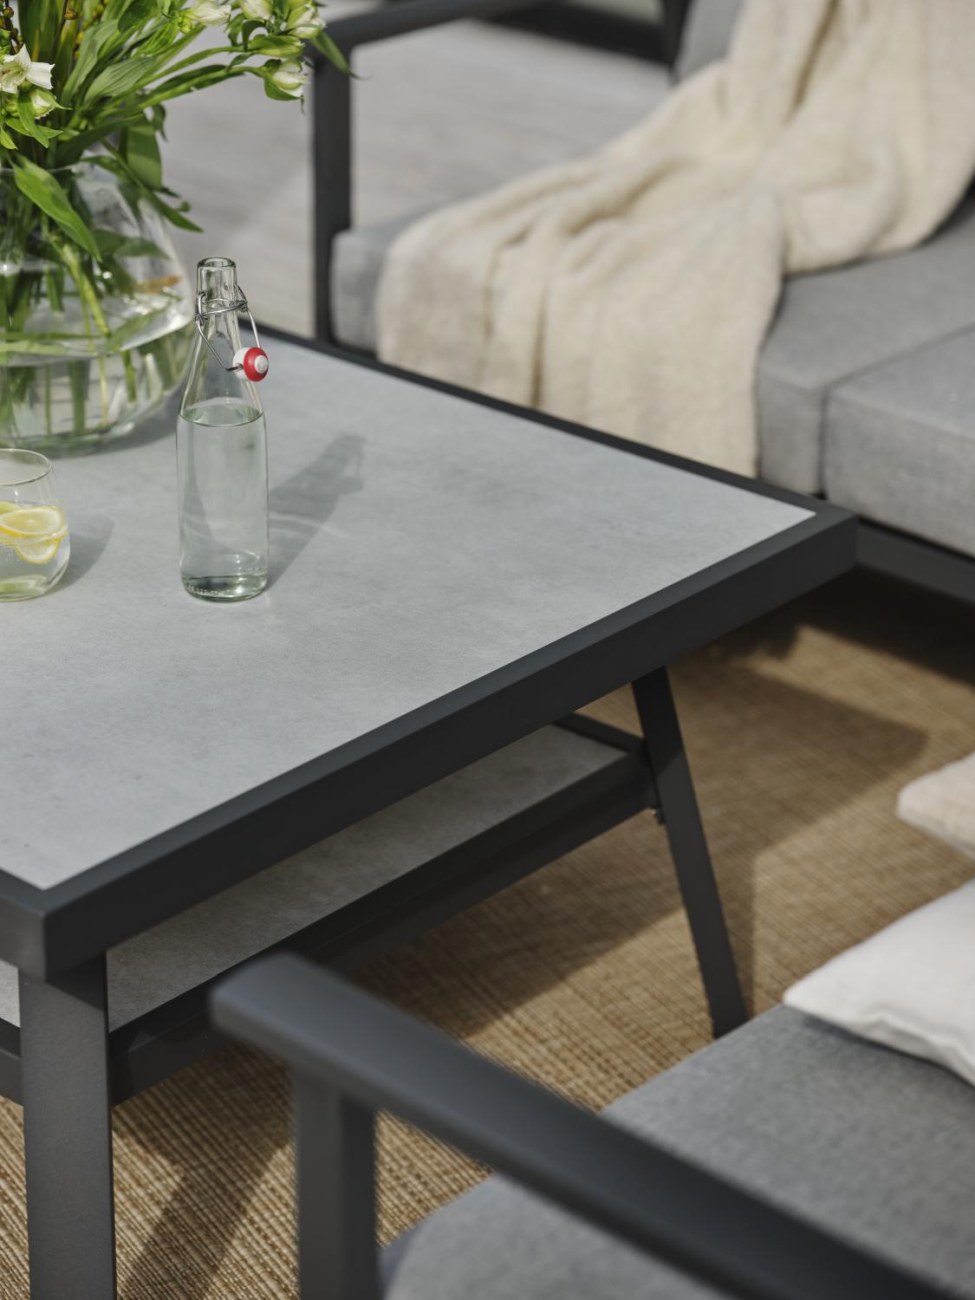 Der Gartencouchtisch Samvaro überzeugt mit seinem modernen Design. Gefertigt wurde die Tischplatte aus Granit und hat einen hellgrauen Farbton. Das Gestell ist aus Metall und hat eine Anthrazit Farbe. Der Tisch besitzt eine Länge von 140 cm.